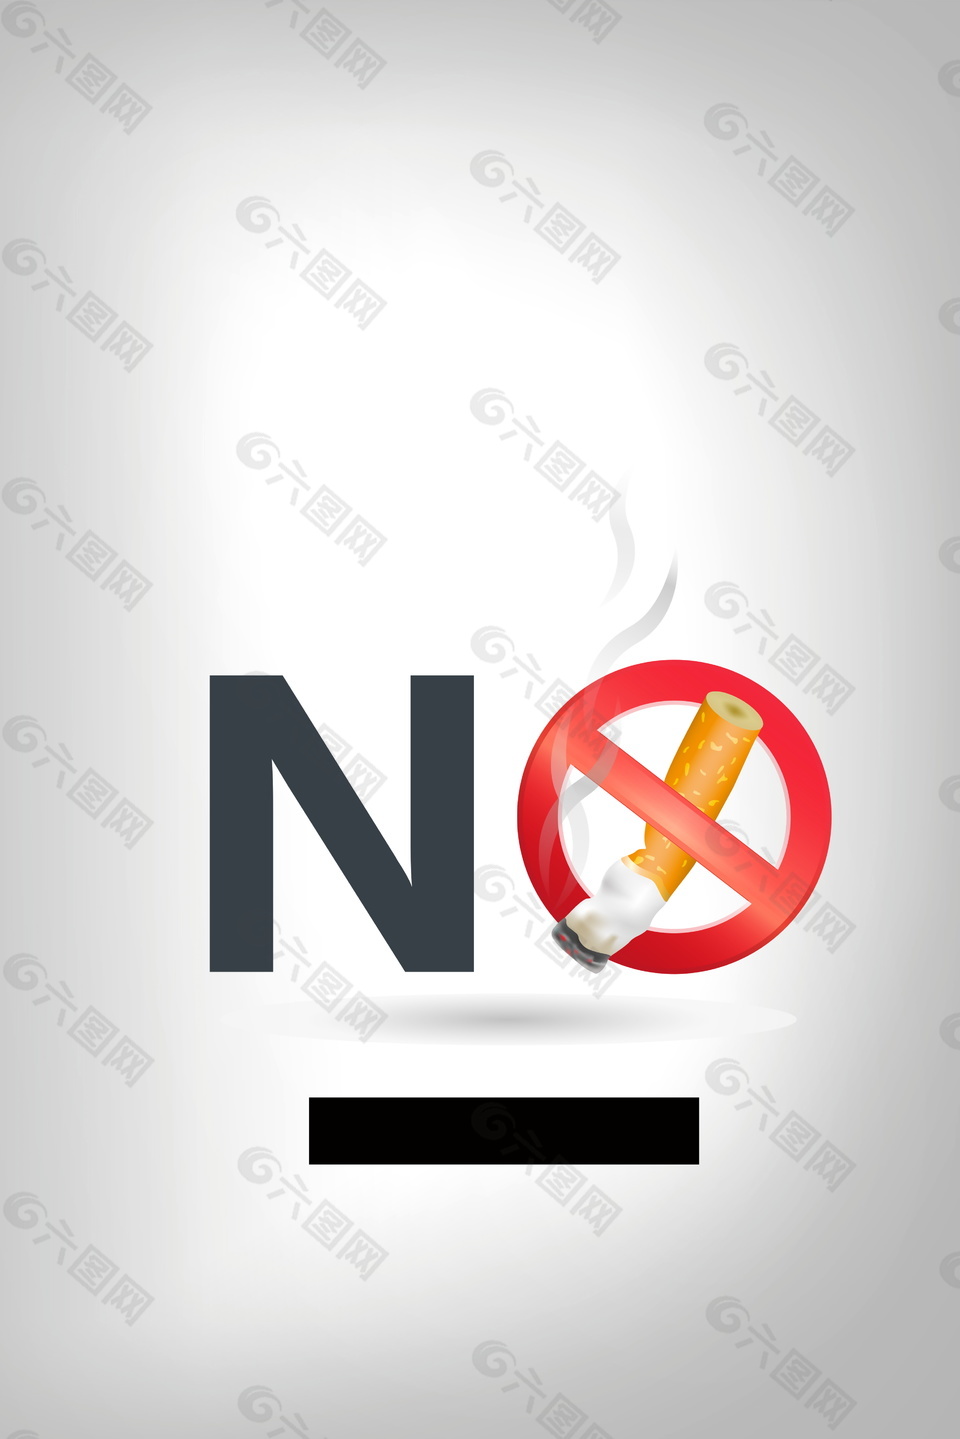 手绘简约禁止吸烟广告背景